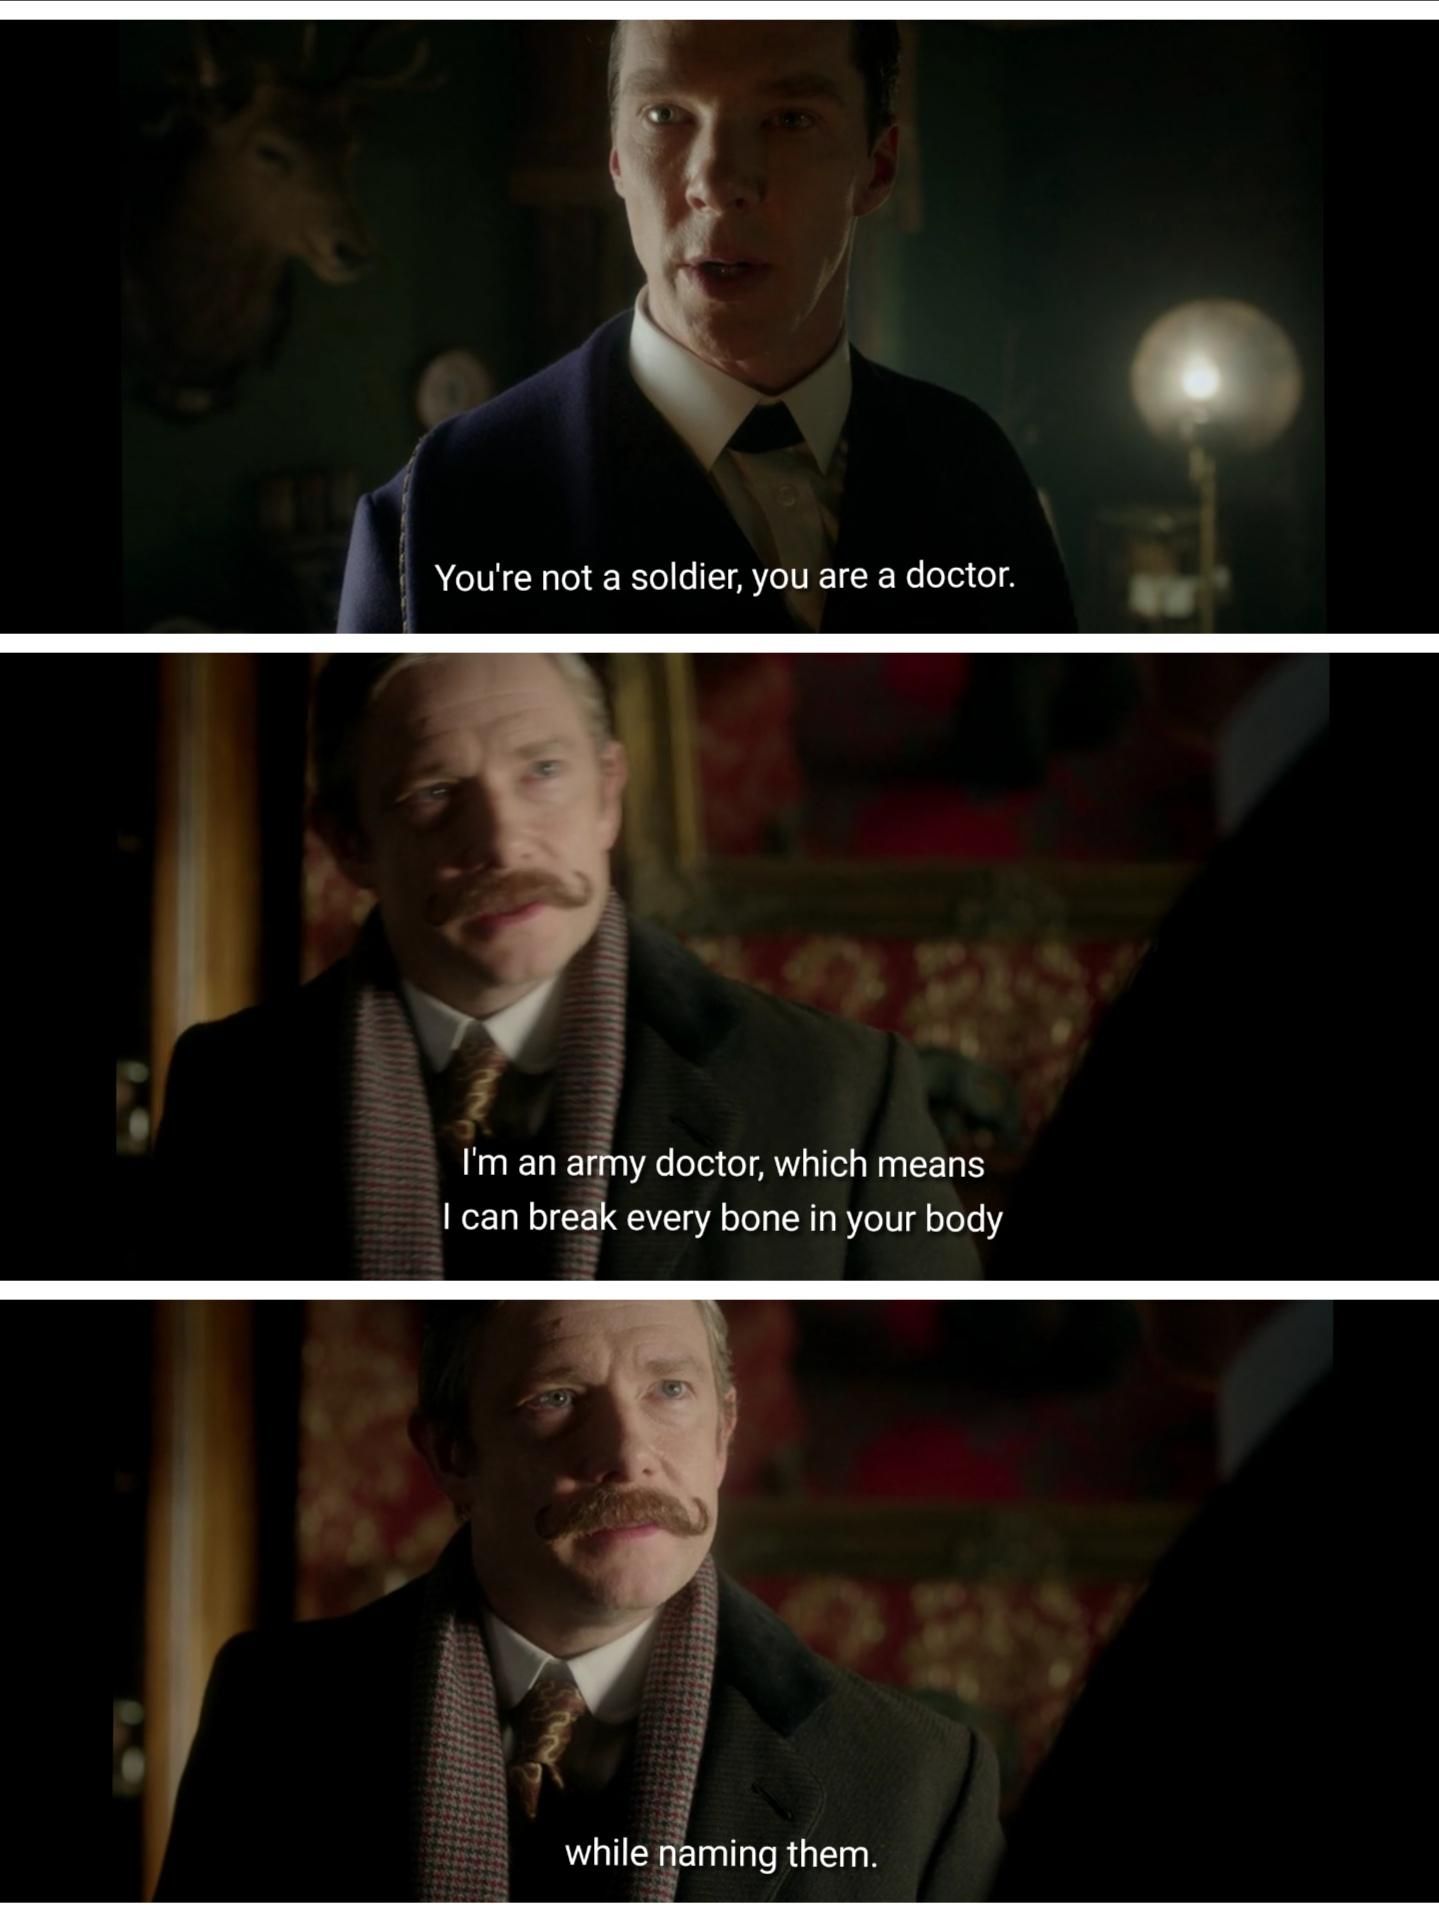 Dr Watson is a badass